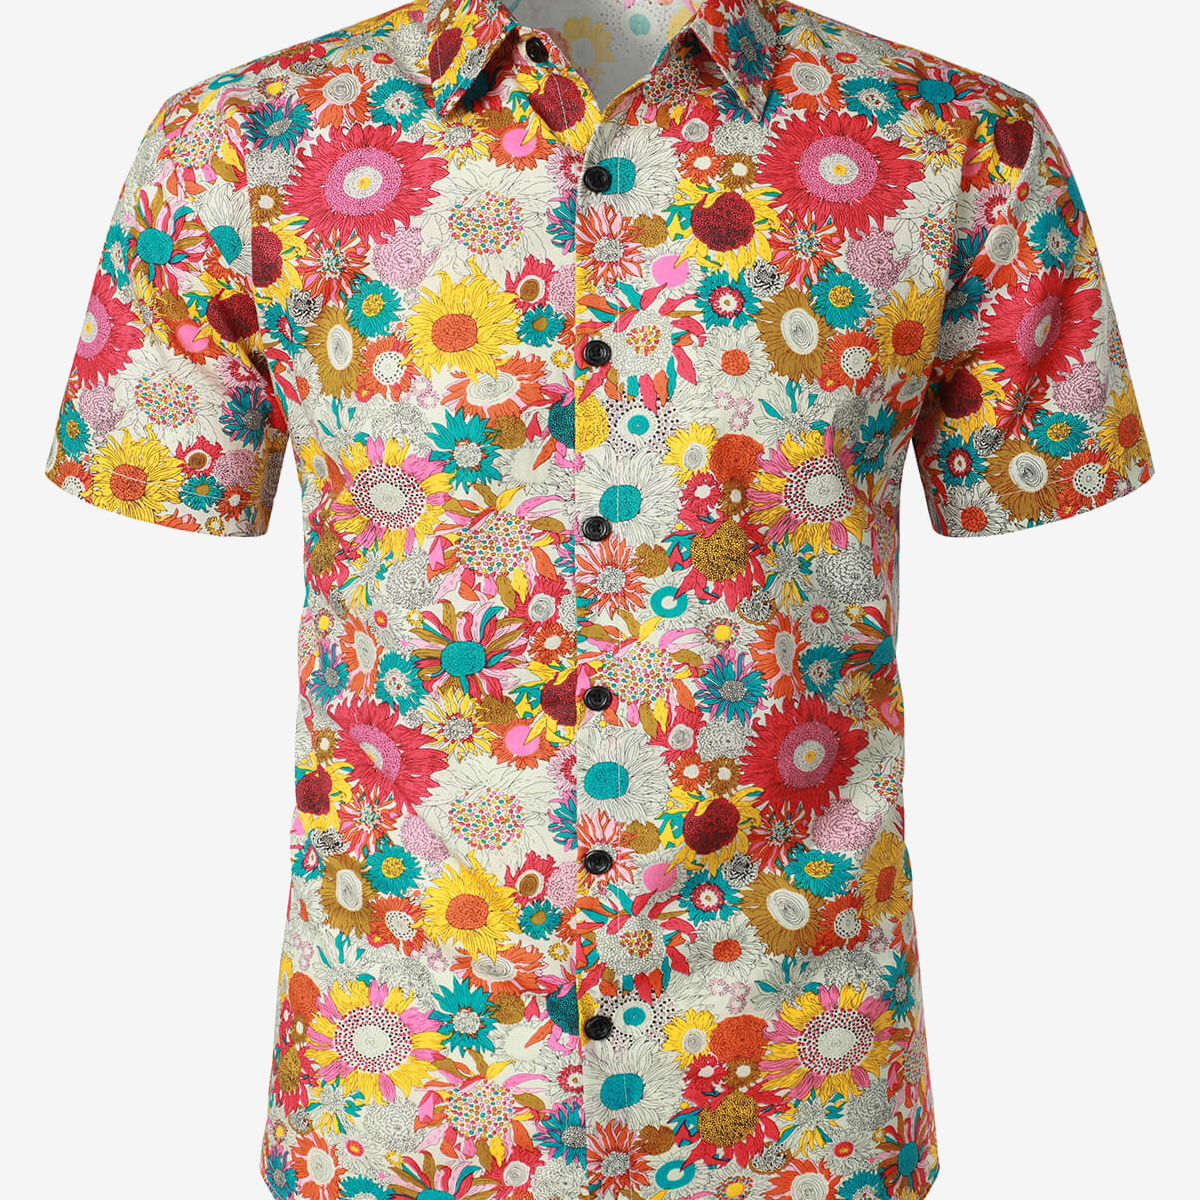 Men's Floral Cool Flower Summer Cotton Button Up Beach Short Sleeve Hawaiian Shirt